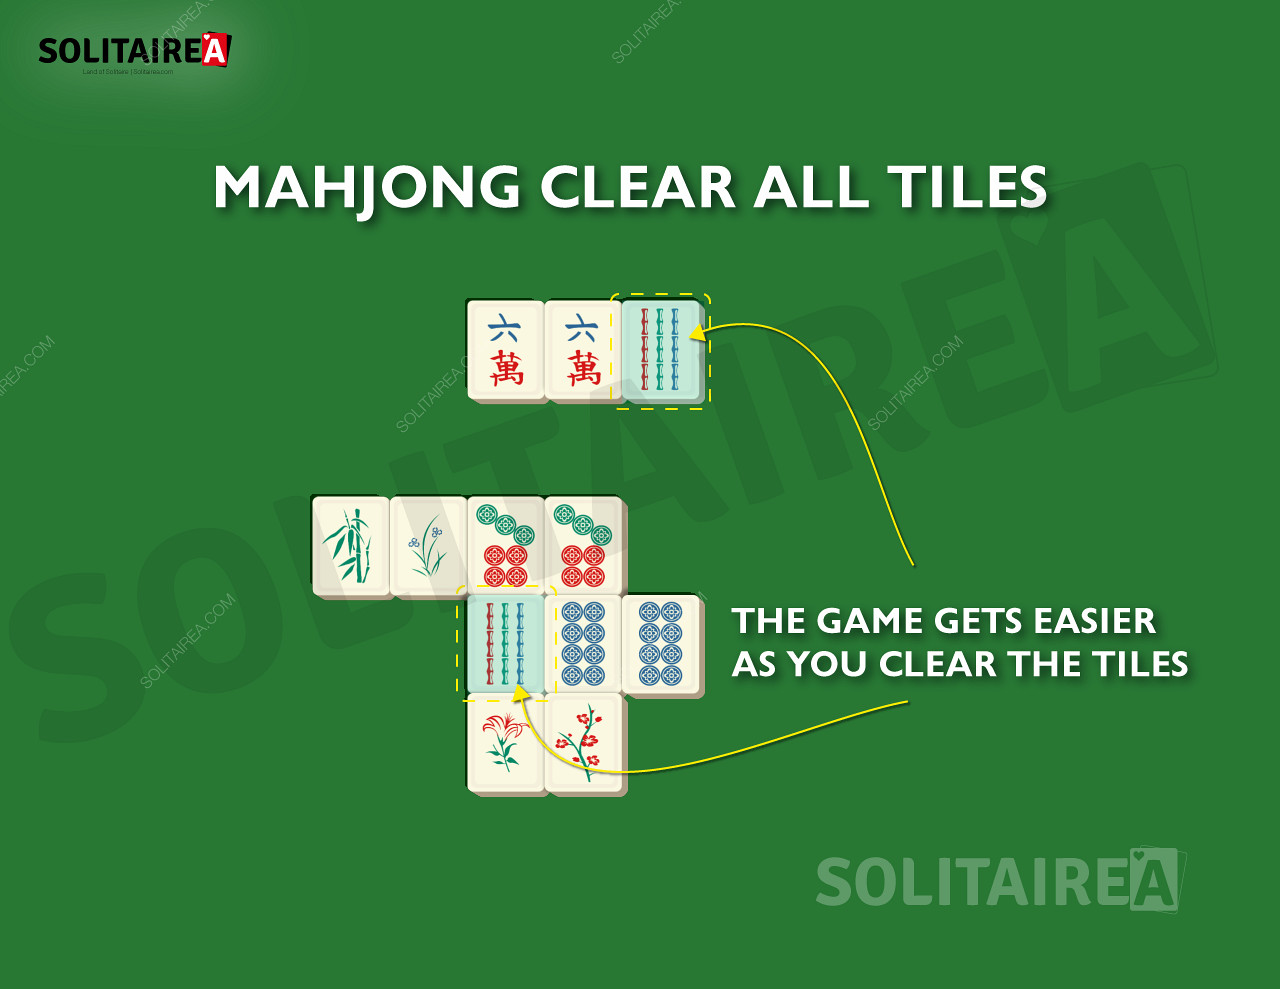 A medida que avances, quedarán menos fichas por eliminar en el Solitario Mahjong.